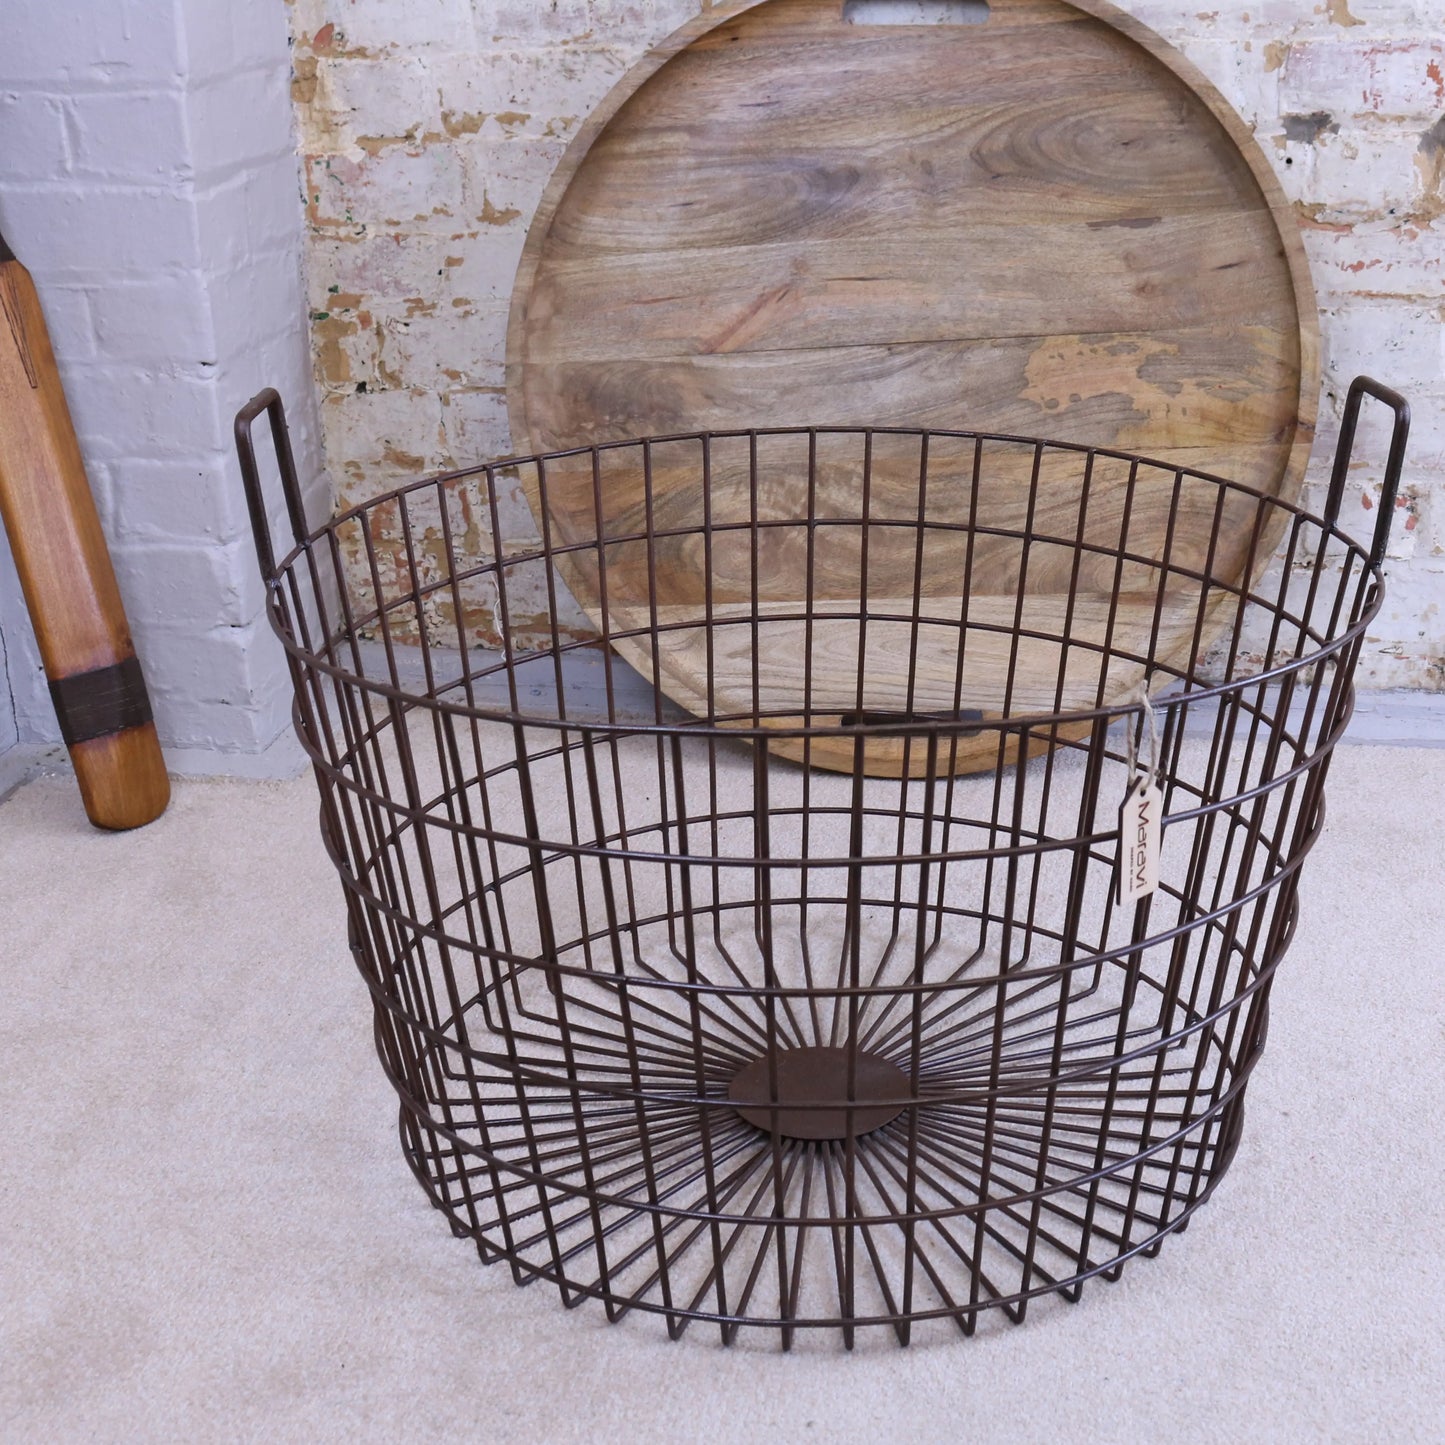 Tilpi Basket Table With Wood Lid Maravi